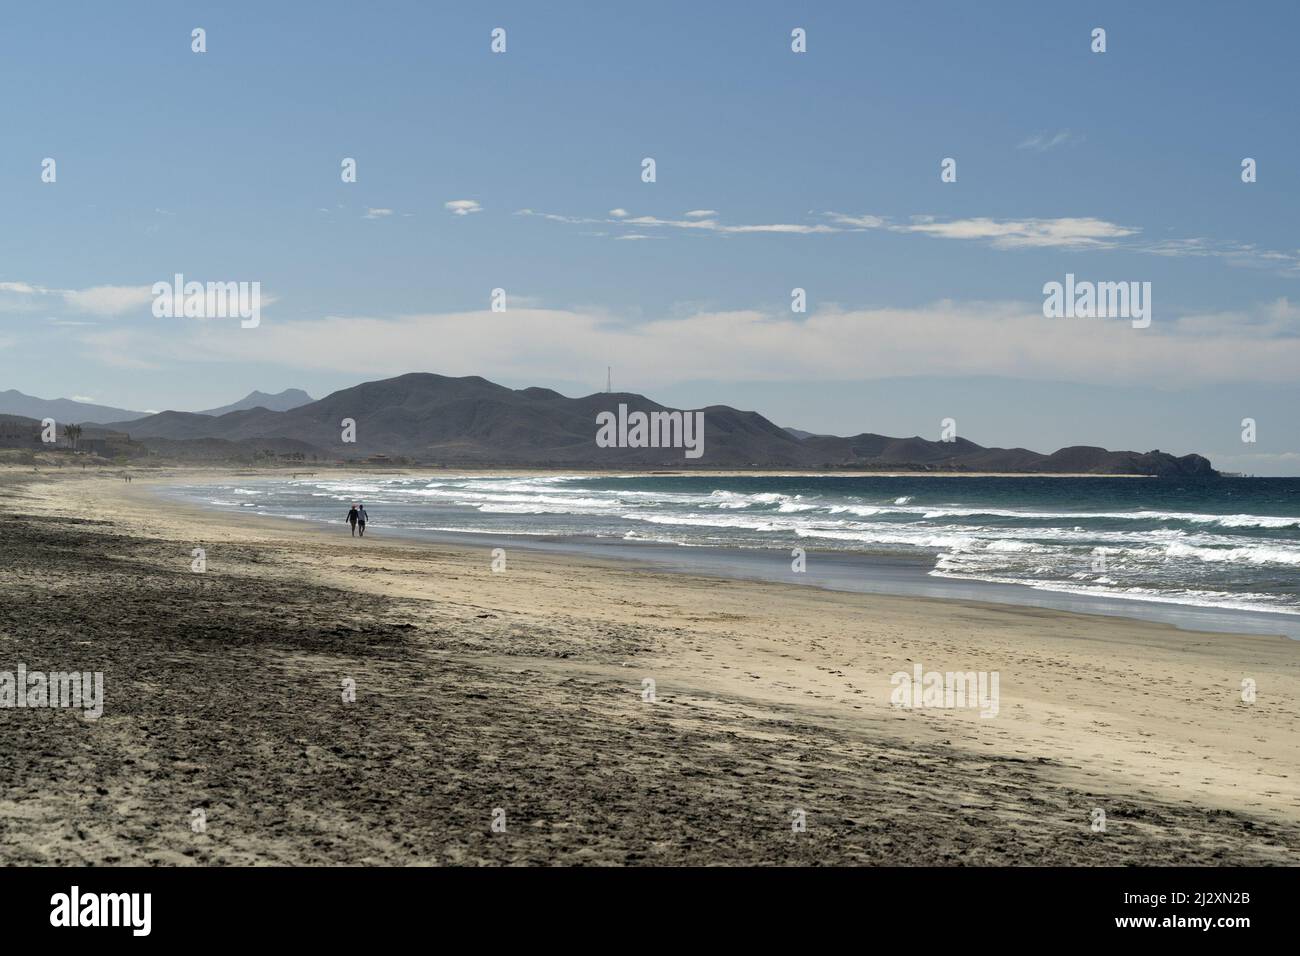 Cerritos todos santos baja california sur Beach mexique Banque D'Images